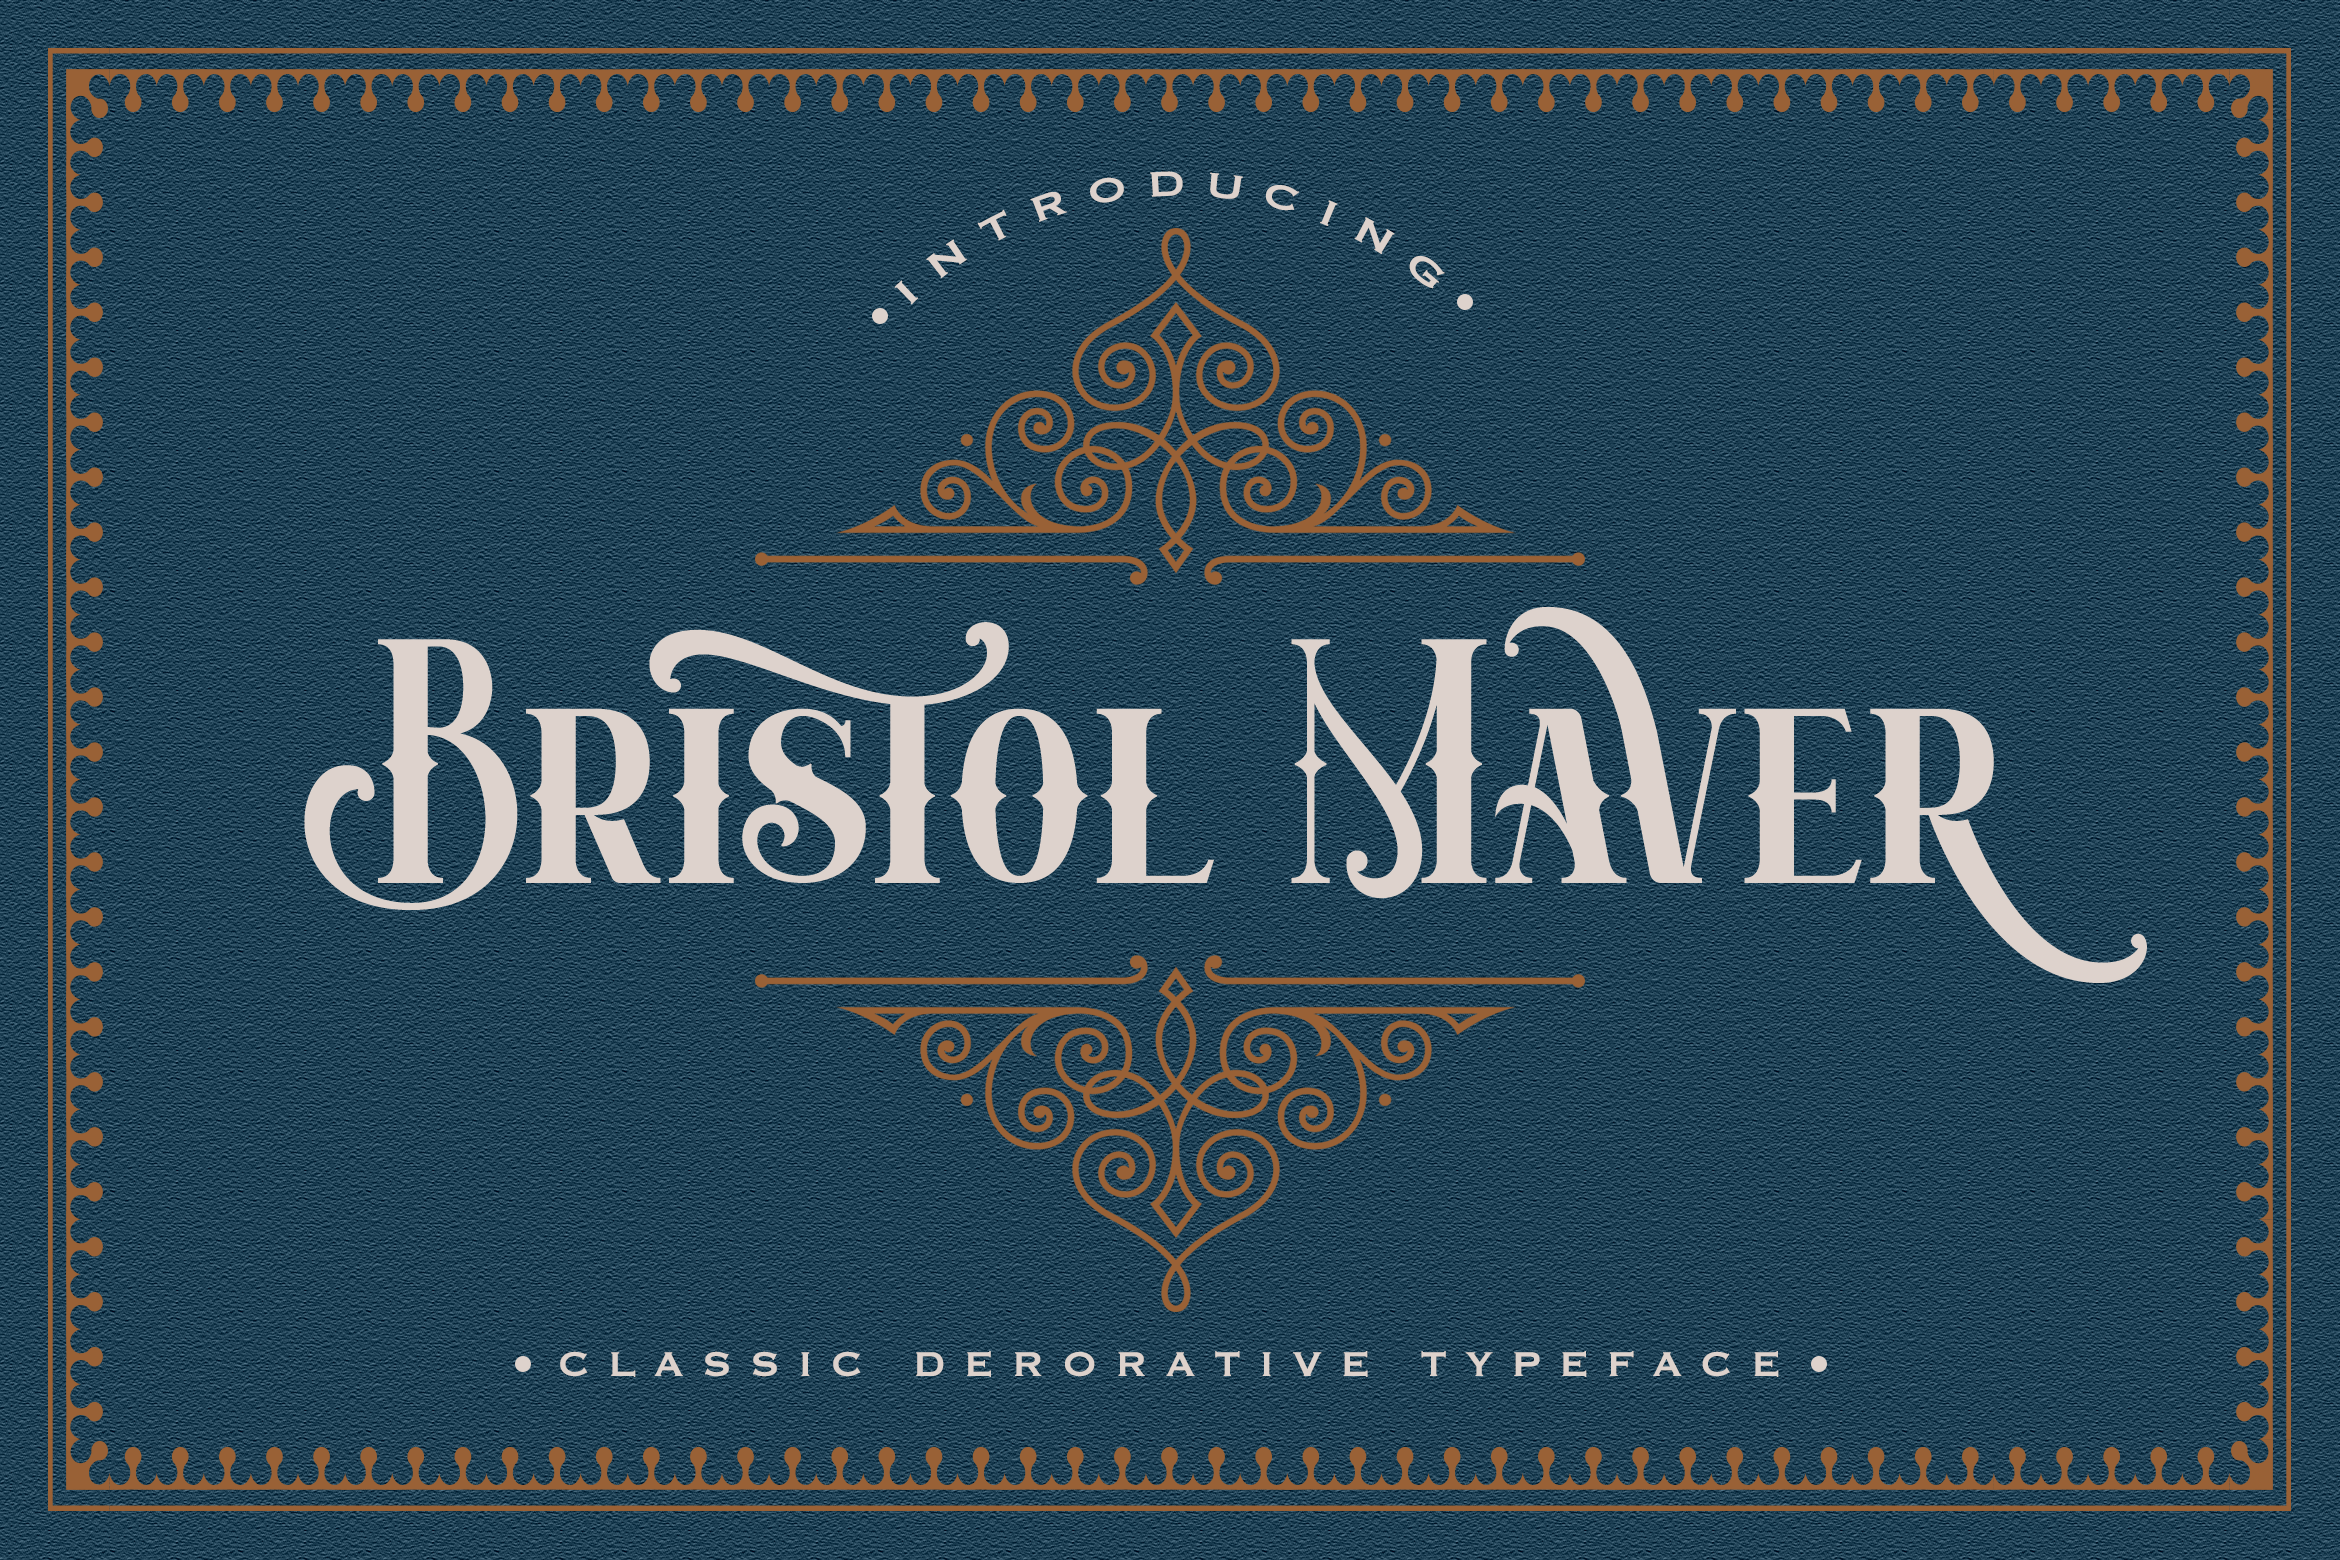 Bristol maver